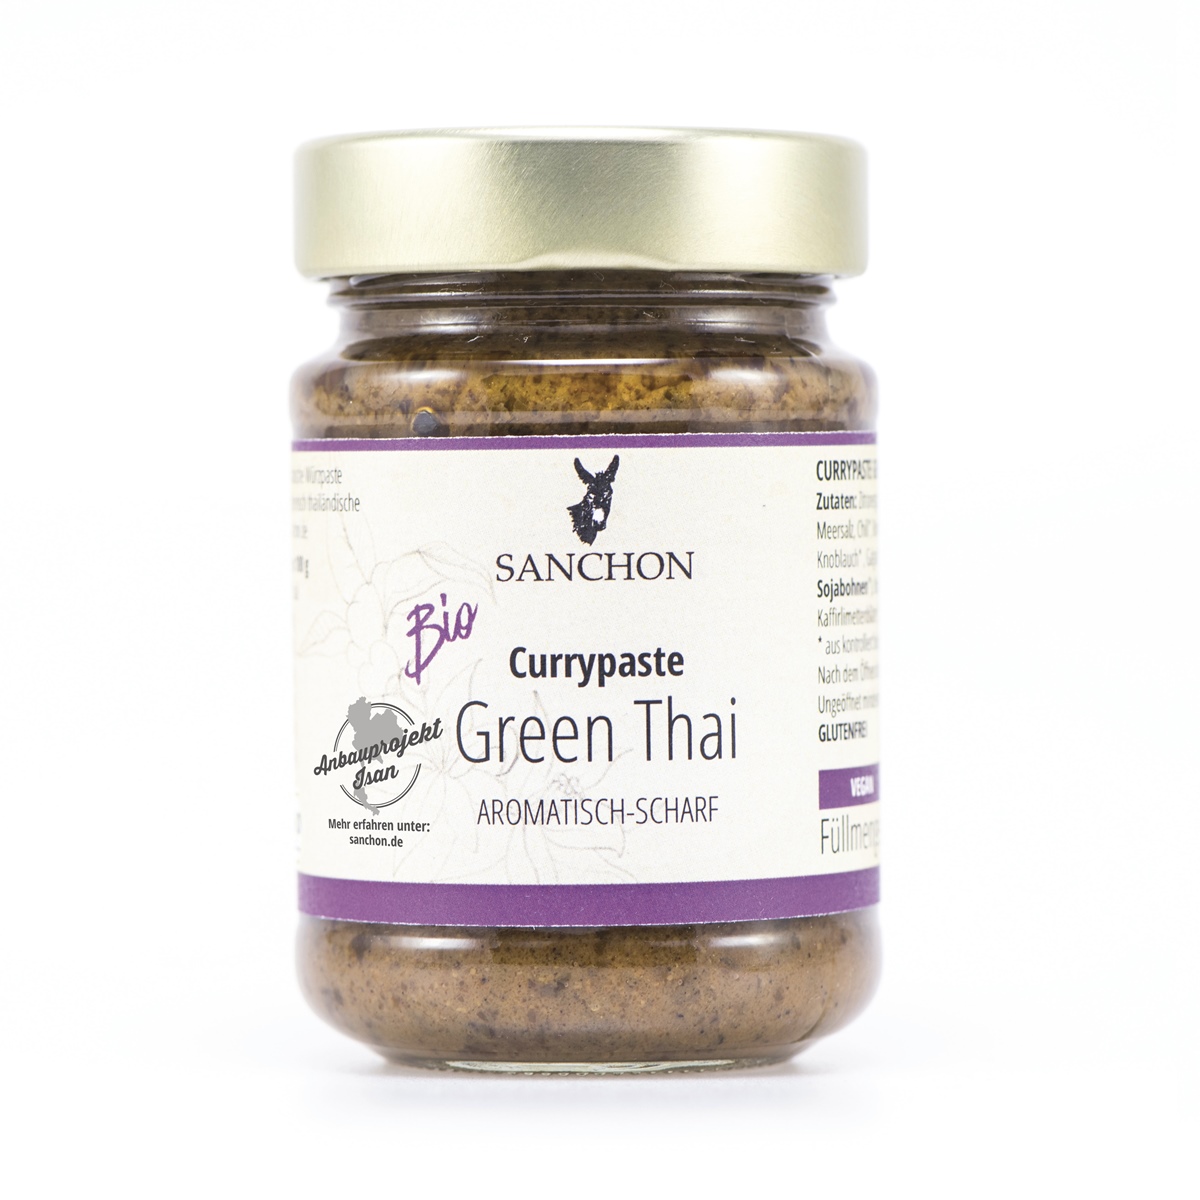 Sanchon Currypaste Green Thai, Sanchon 190 g